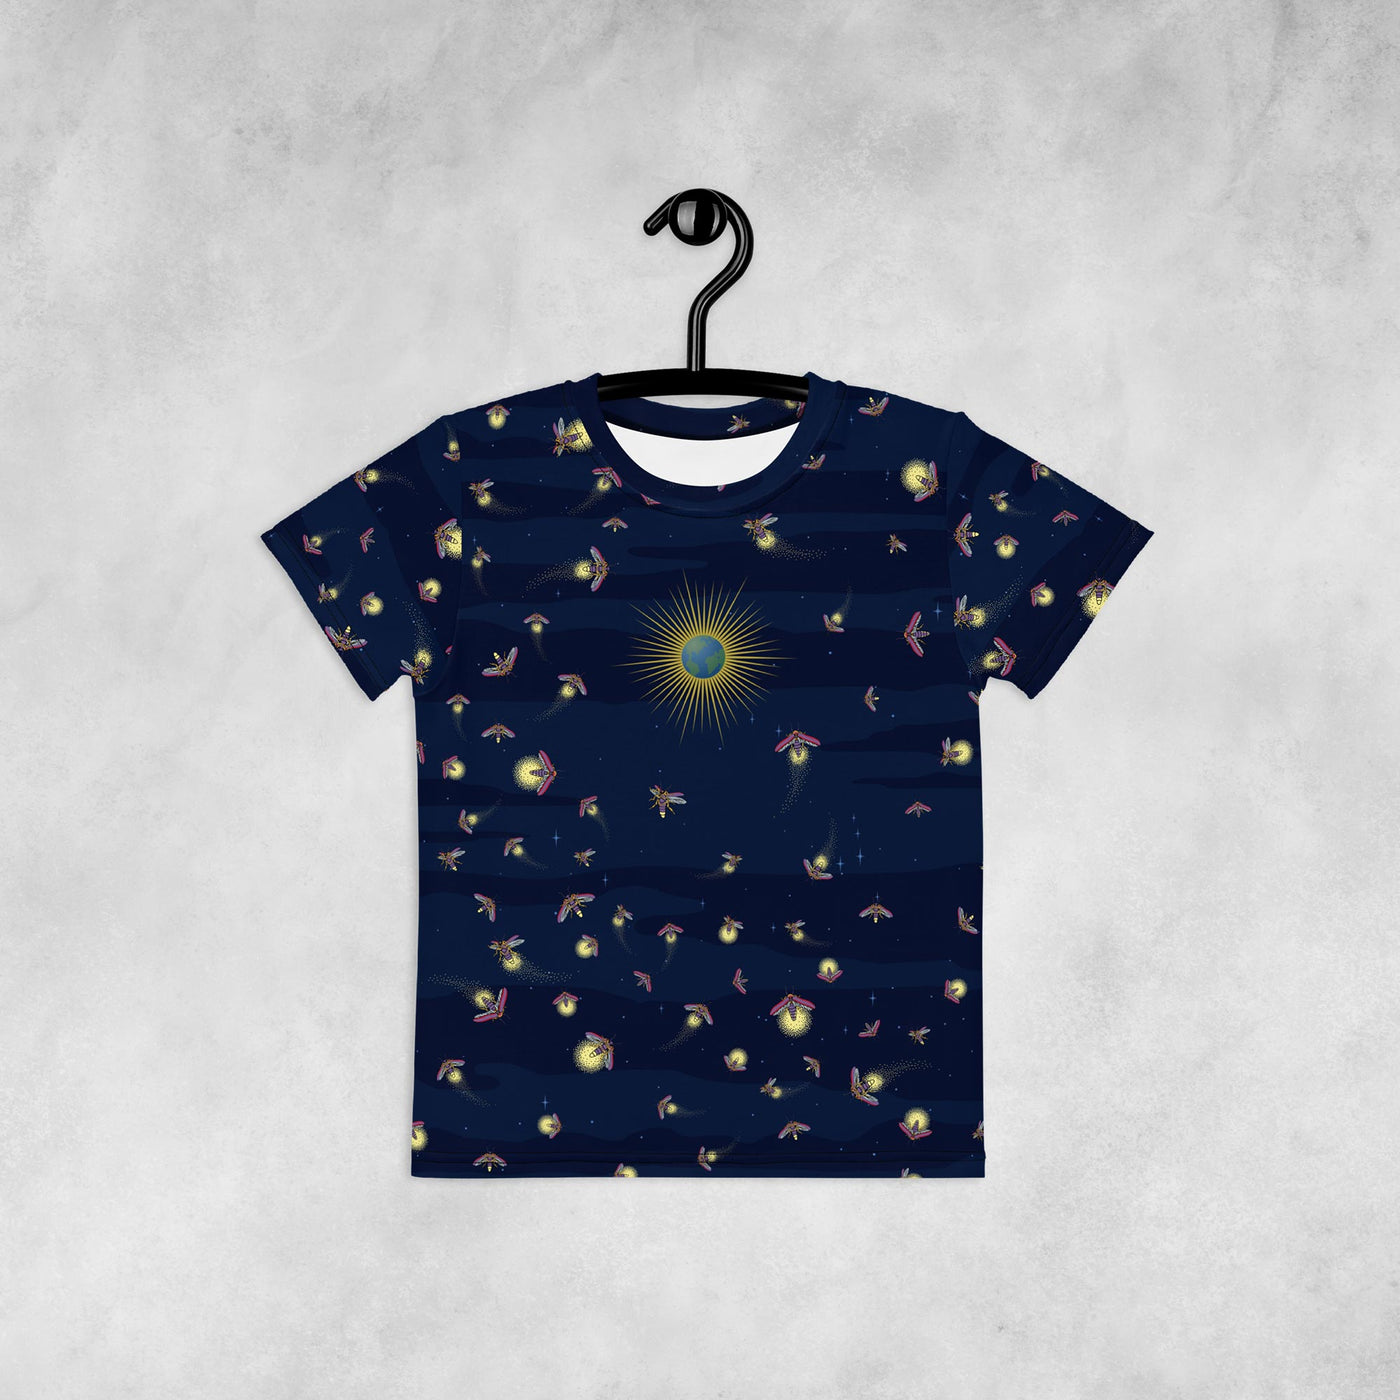 Fireflies - Toddler T-Shirt